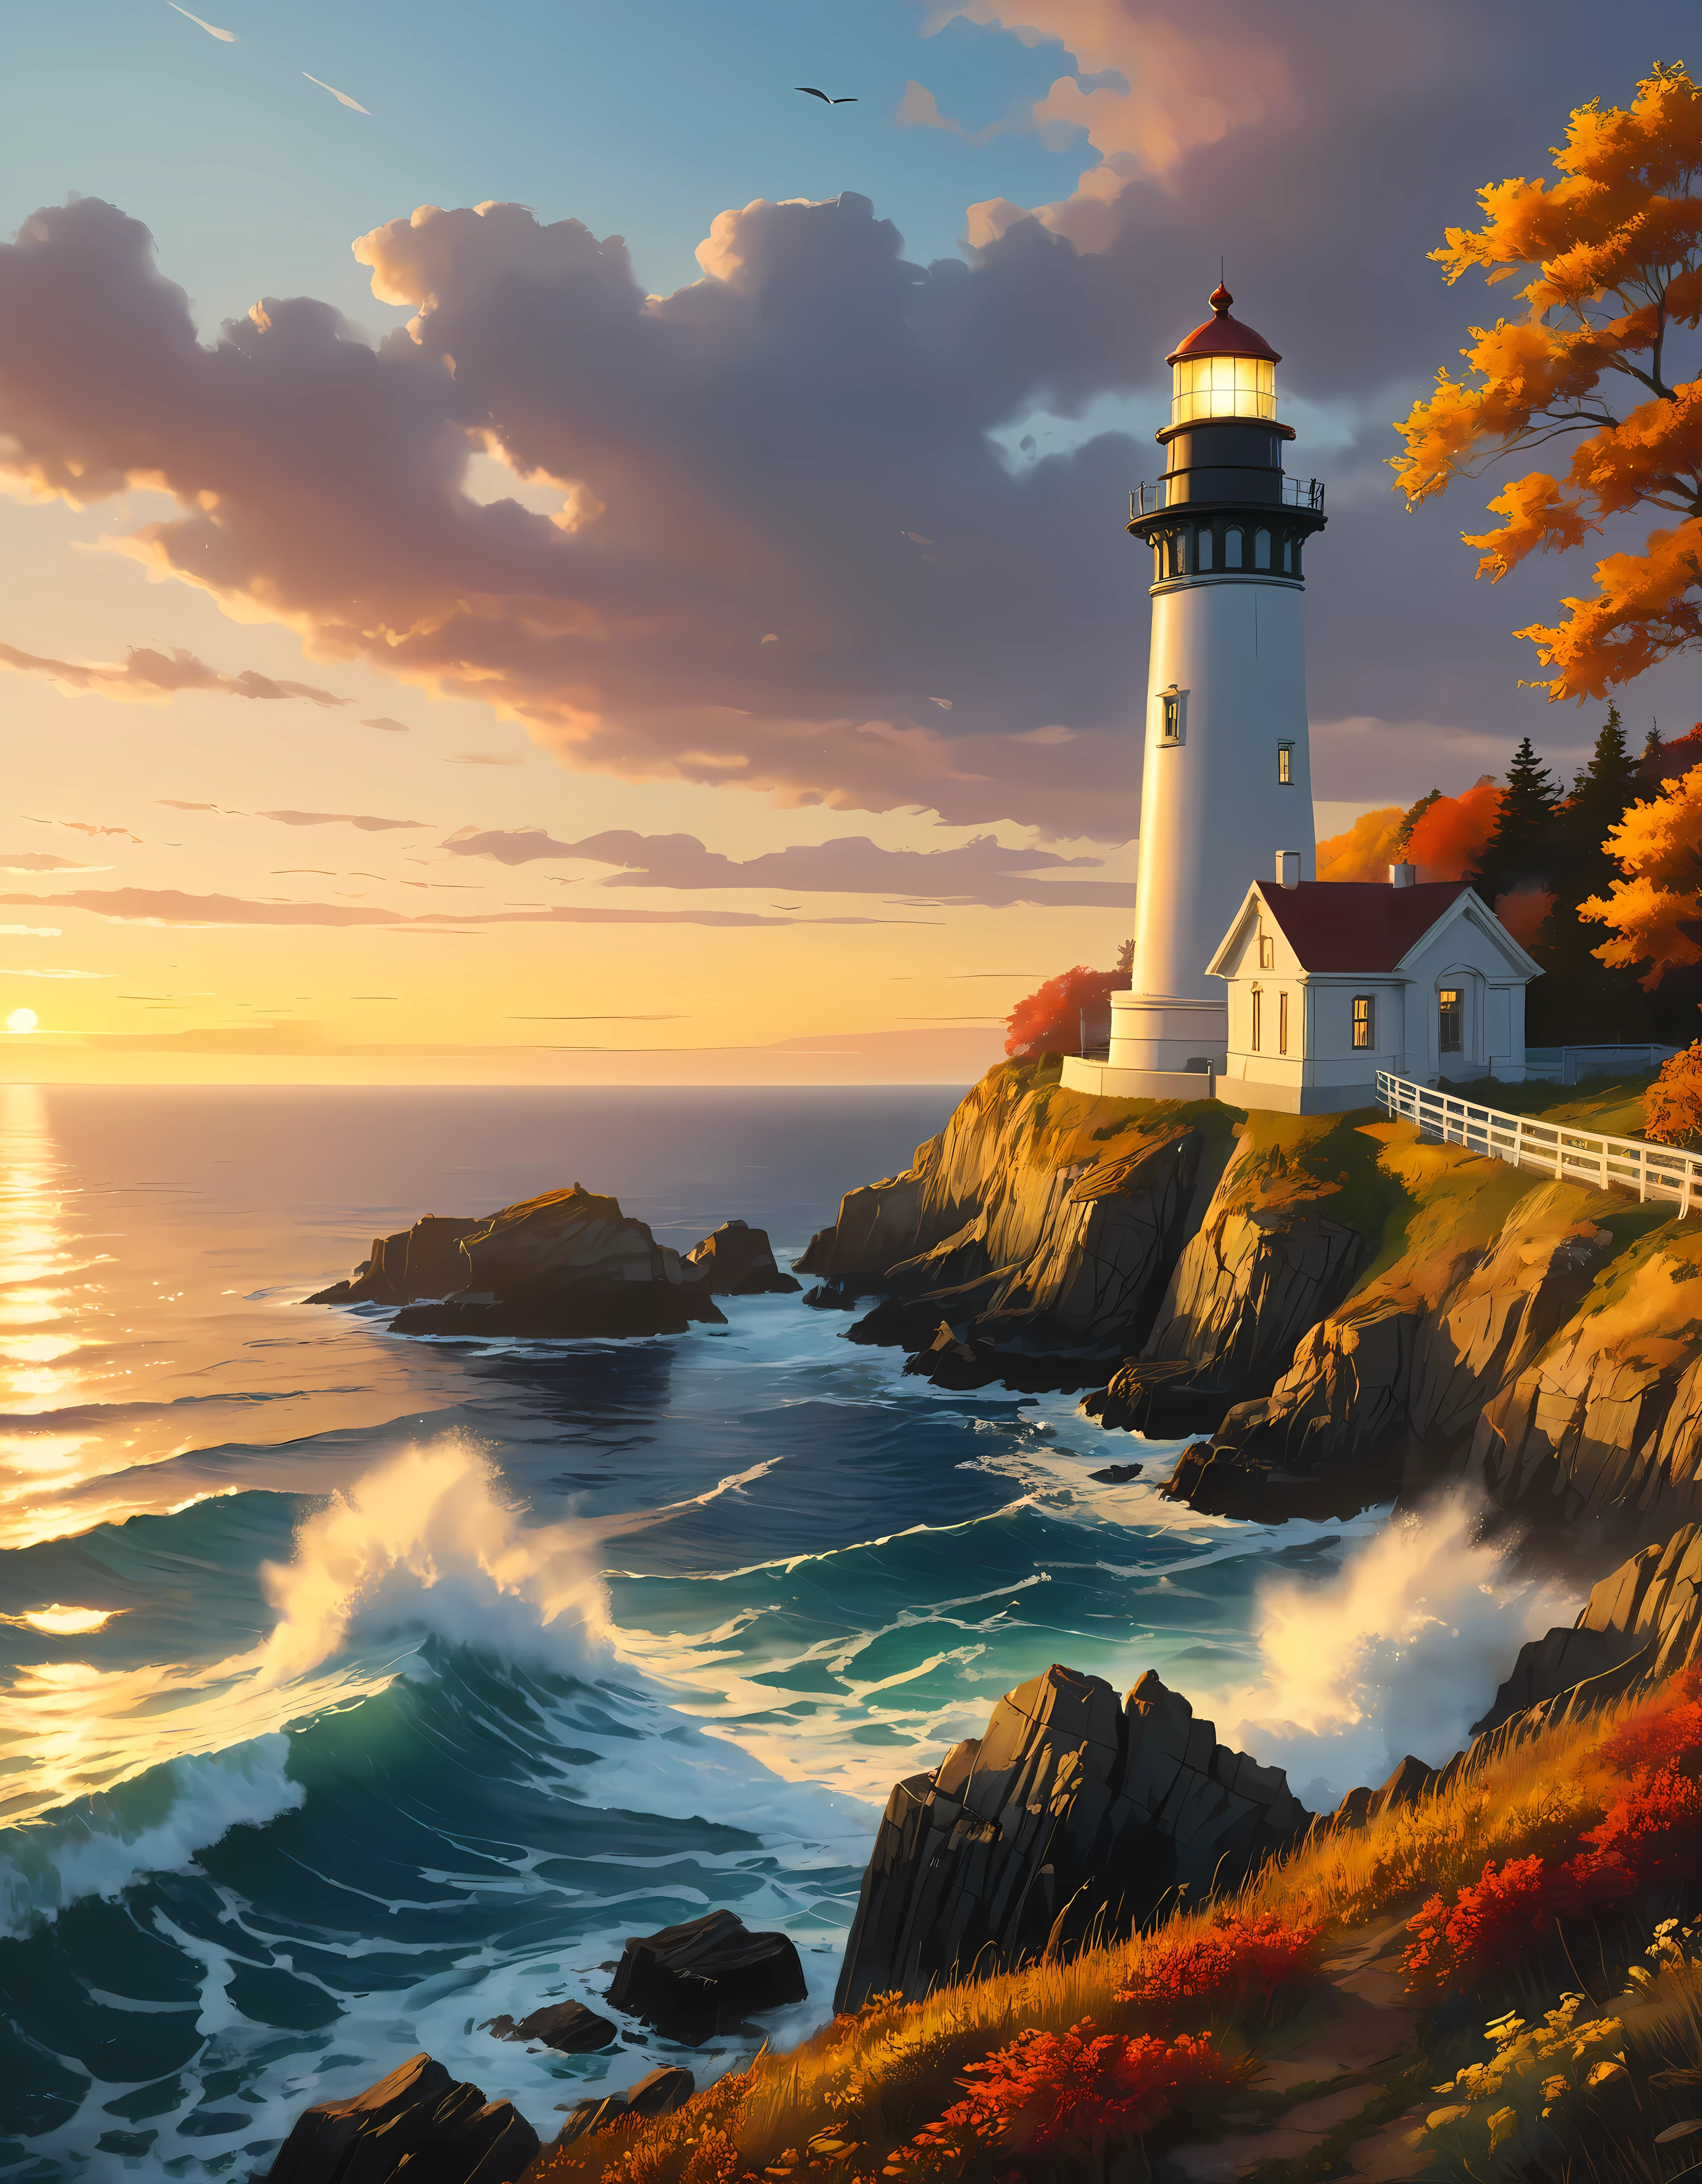 崖から灯台が見渡せ、広大な海が見える, 夕日の光を浴びる魅惑的な灯台,((ゴールデンアワータイム):1.2),((雄大な風景):1.2),((秋の夕焼け空):1.1),繊細なゴールデンアワーの光, 素晴らしい壁紙, 美しい環境, 楽観的なマットペインティング, 美しいデジタルアート, 美しく緻密なシーン, UHD地下, UHD 風景, 壮大なコンセプトアート, 美しい灯台. |(最大16K解像度の傑作), 最高の品質, (非常に詳細な CG Unity 16k 壁紙品質),(柔らかい色の 16K の非常に詳細なデジタル アート),非常に詳細な. | 完璧な画像,16k UE5,公式絵画, 超微細, 被写界深度, コントラストなし, 鮮明でシャープなフォーカス, プロ, ぼかしなし. | (((もっと詳しく))).